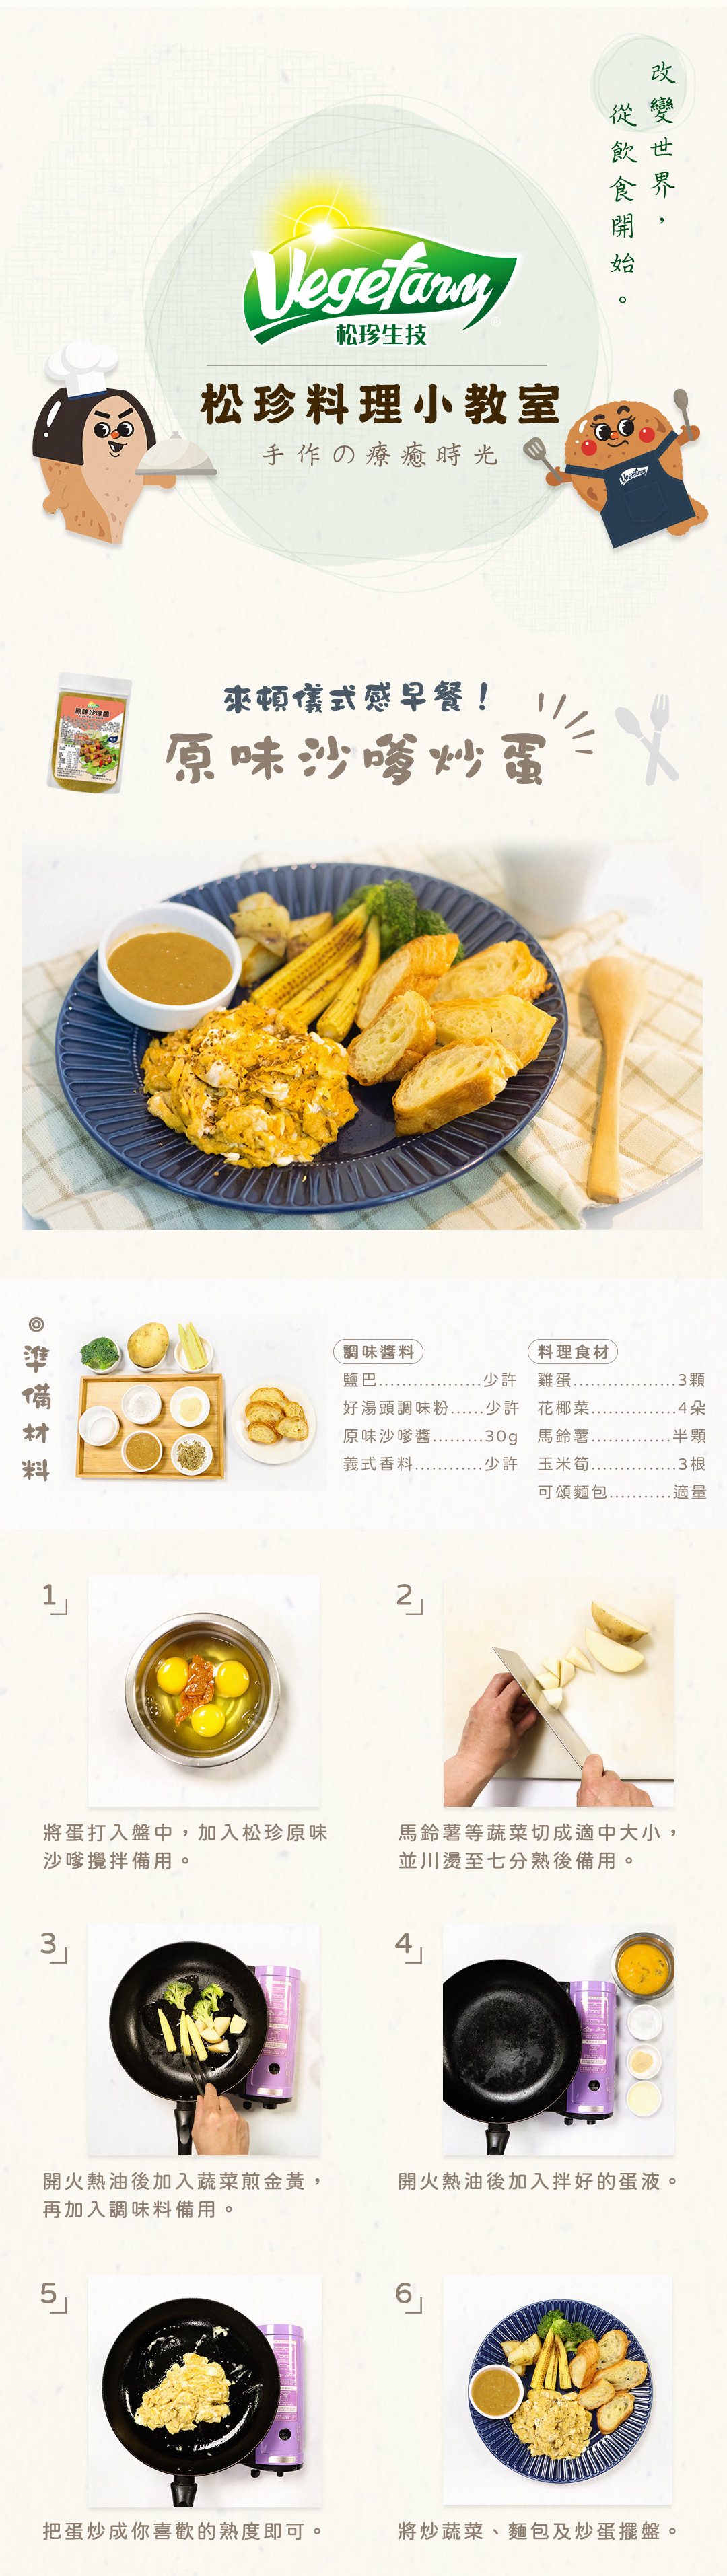 松珍-南洋素食沙嗲醬食譜-原味沙嗲炒蛋